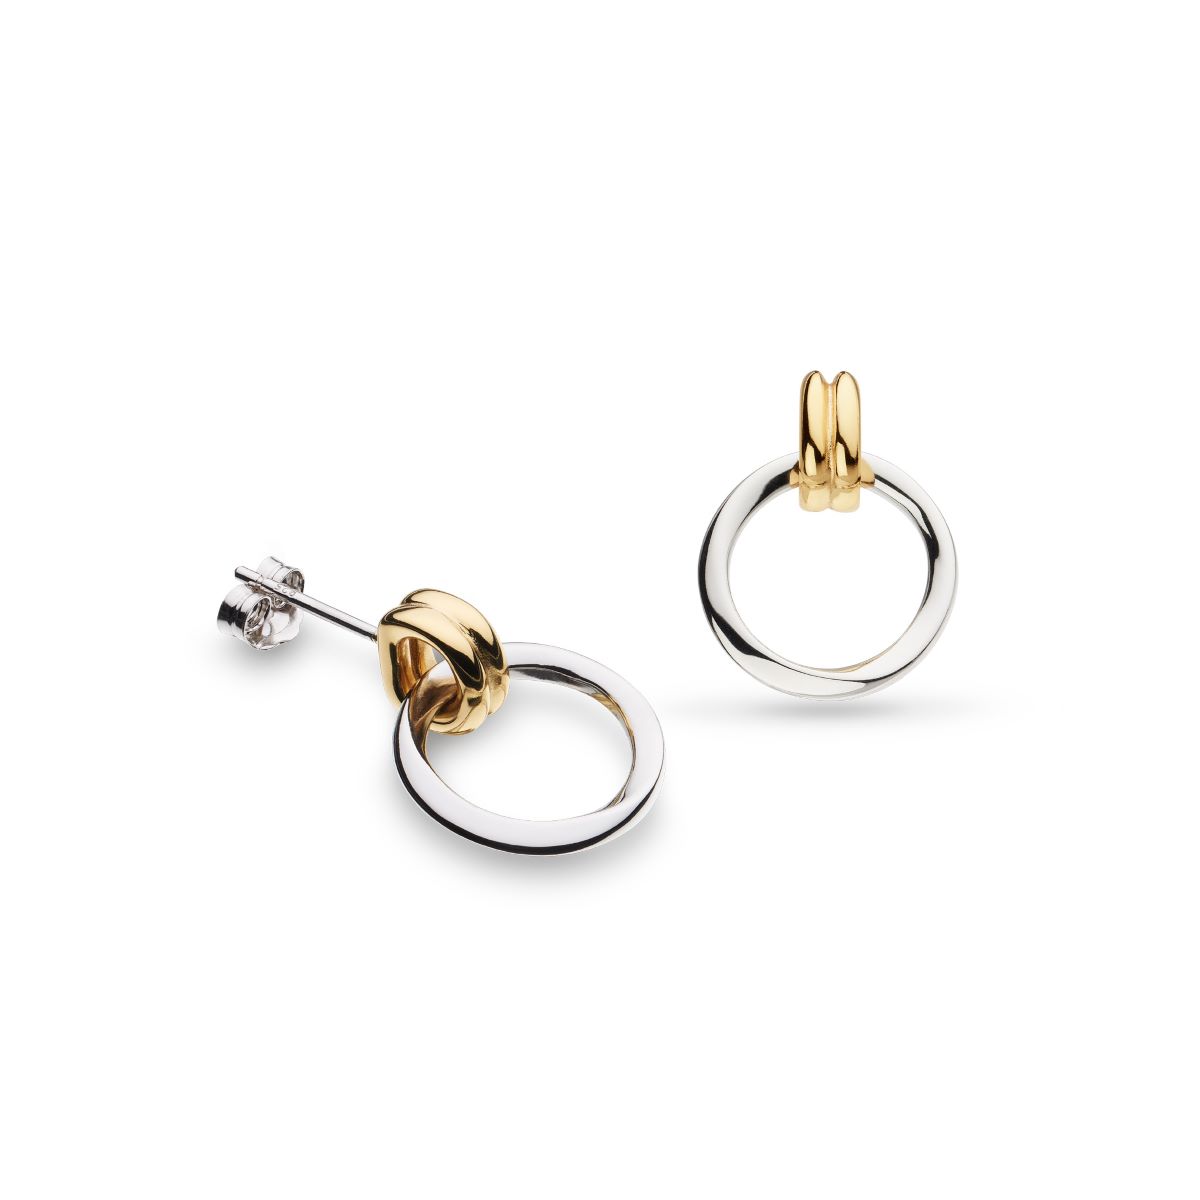 Kit Heath Bevel Unity Golden Drop Stud Earrings - 41172GRP